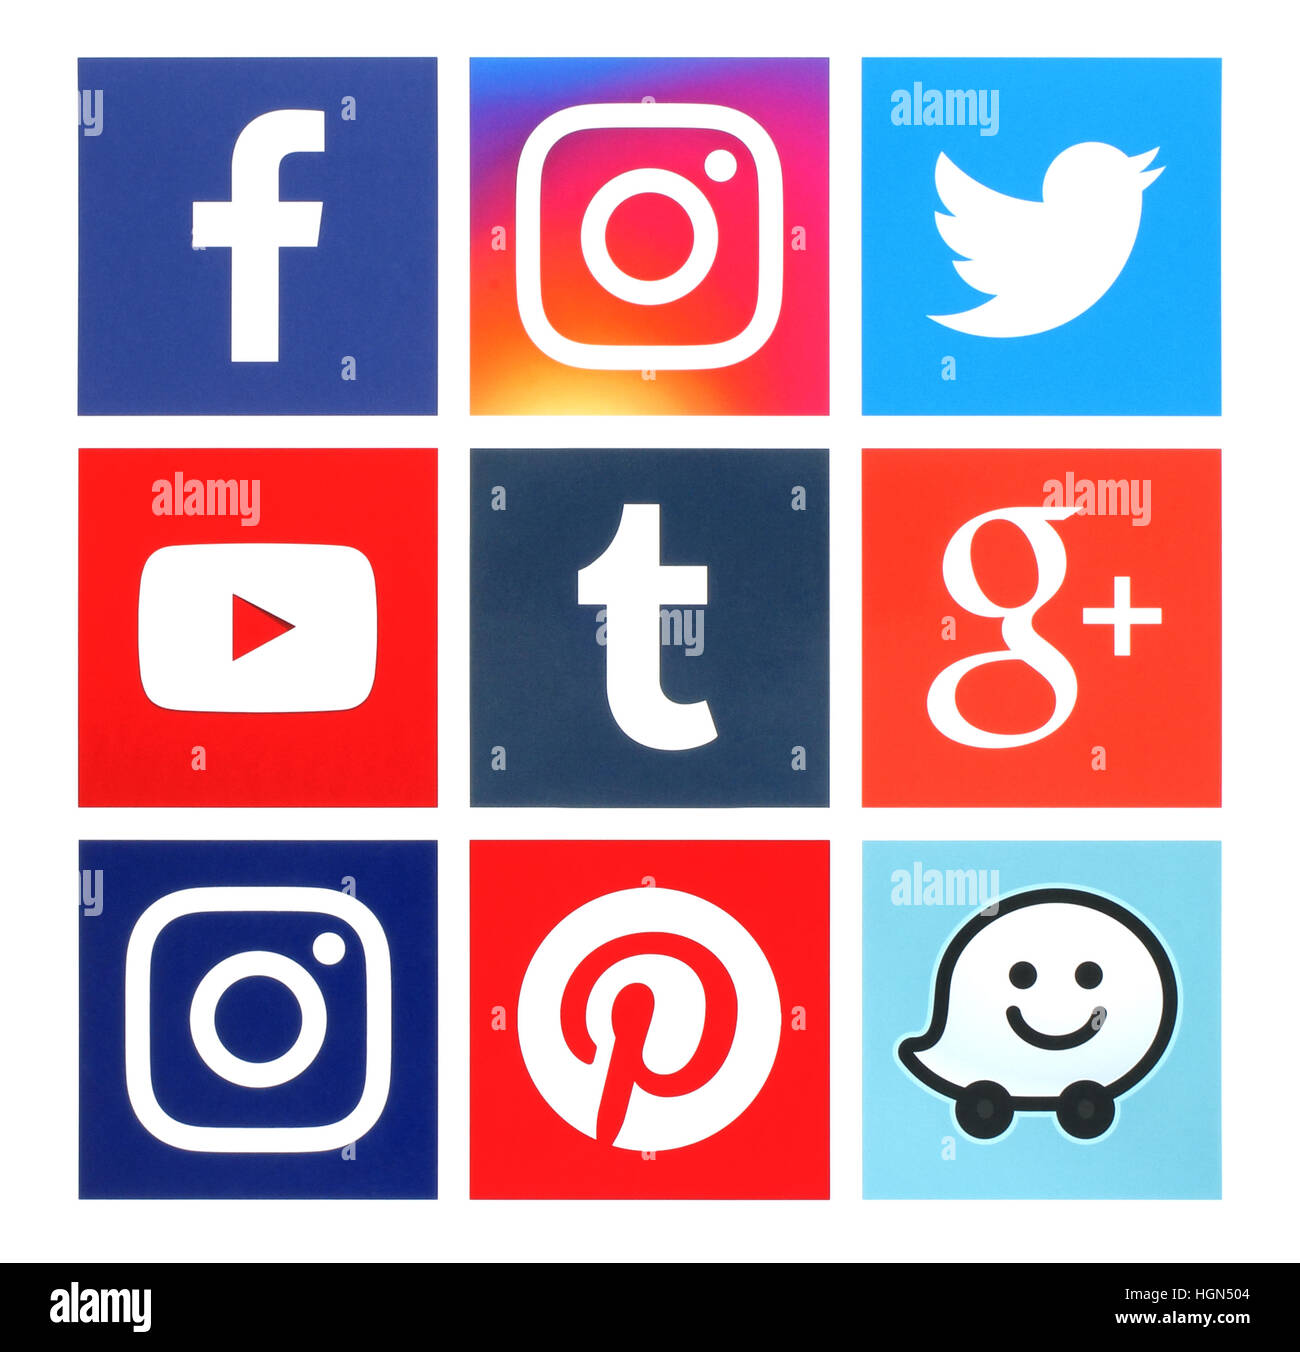 Kiev, Ukraine - 22 juin 2016 : Collection de médias sociaux populaires carrés logos imprimés sur du papier:Facebook, Twitter, Google Plus, Instagram, Youtube, Wa Banque D'Images